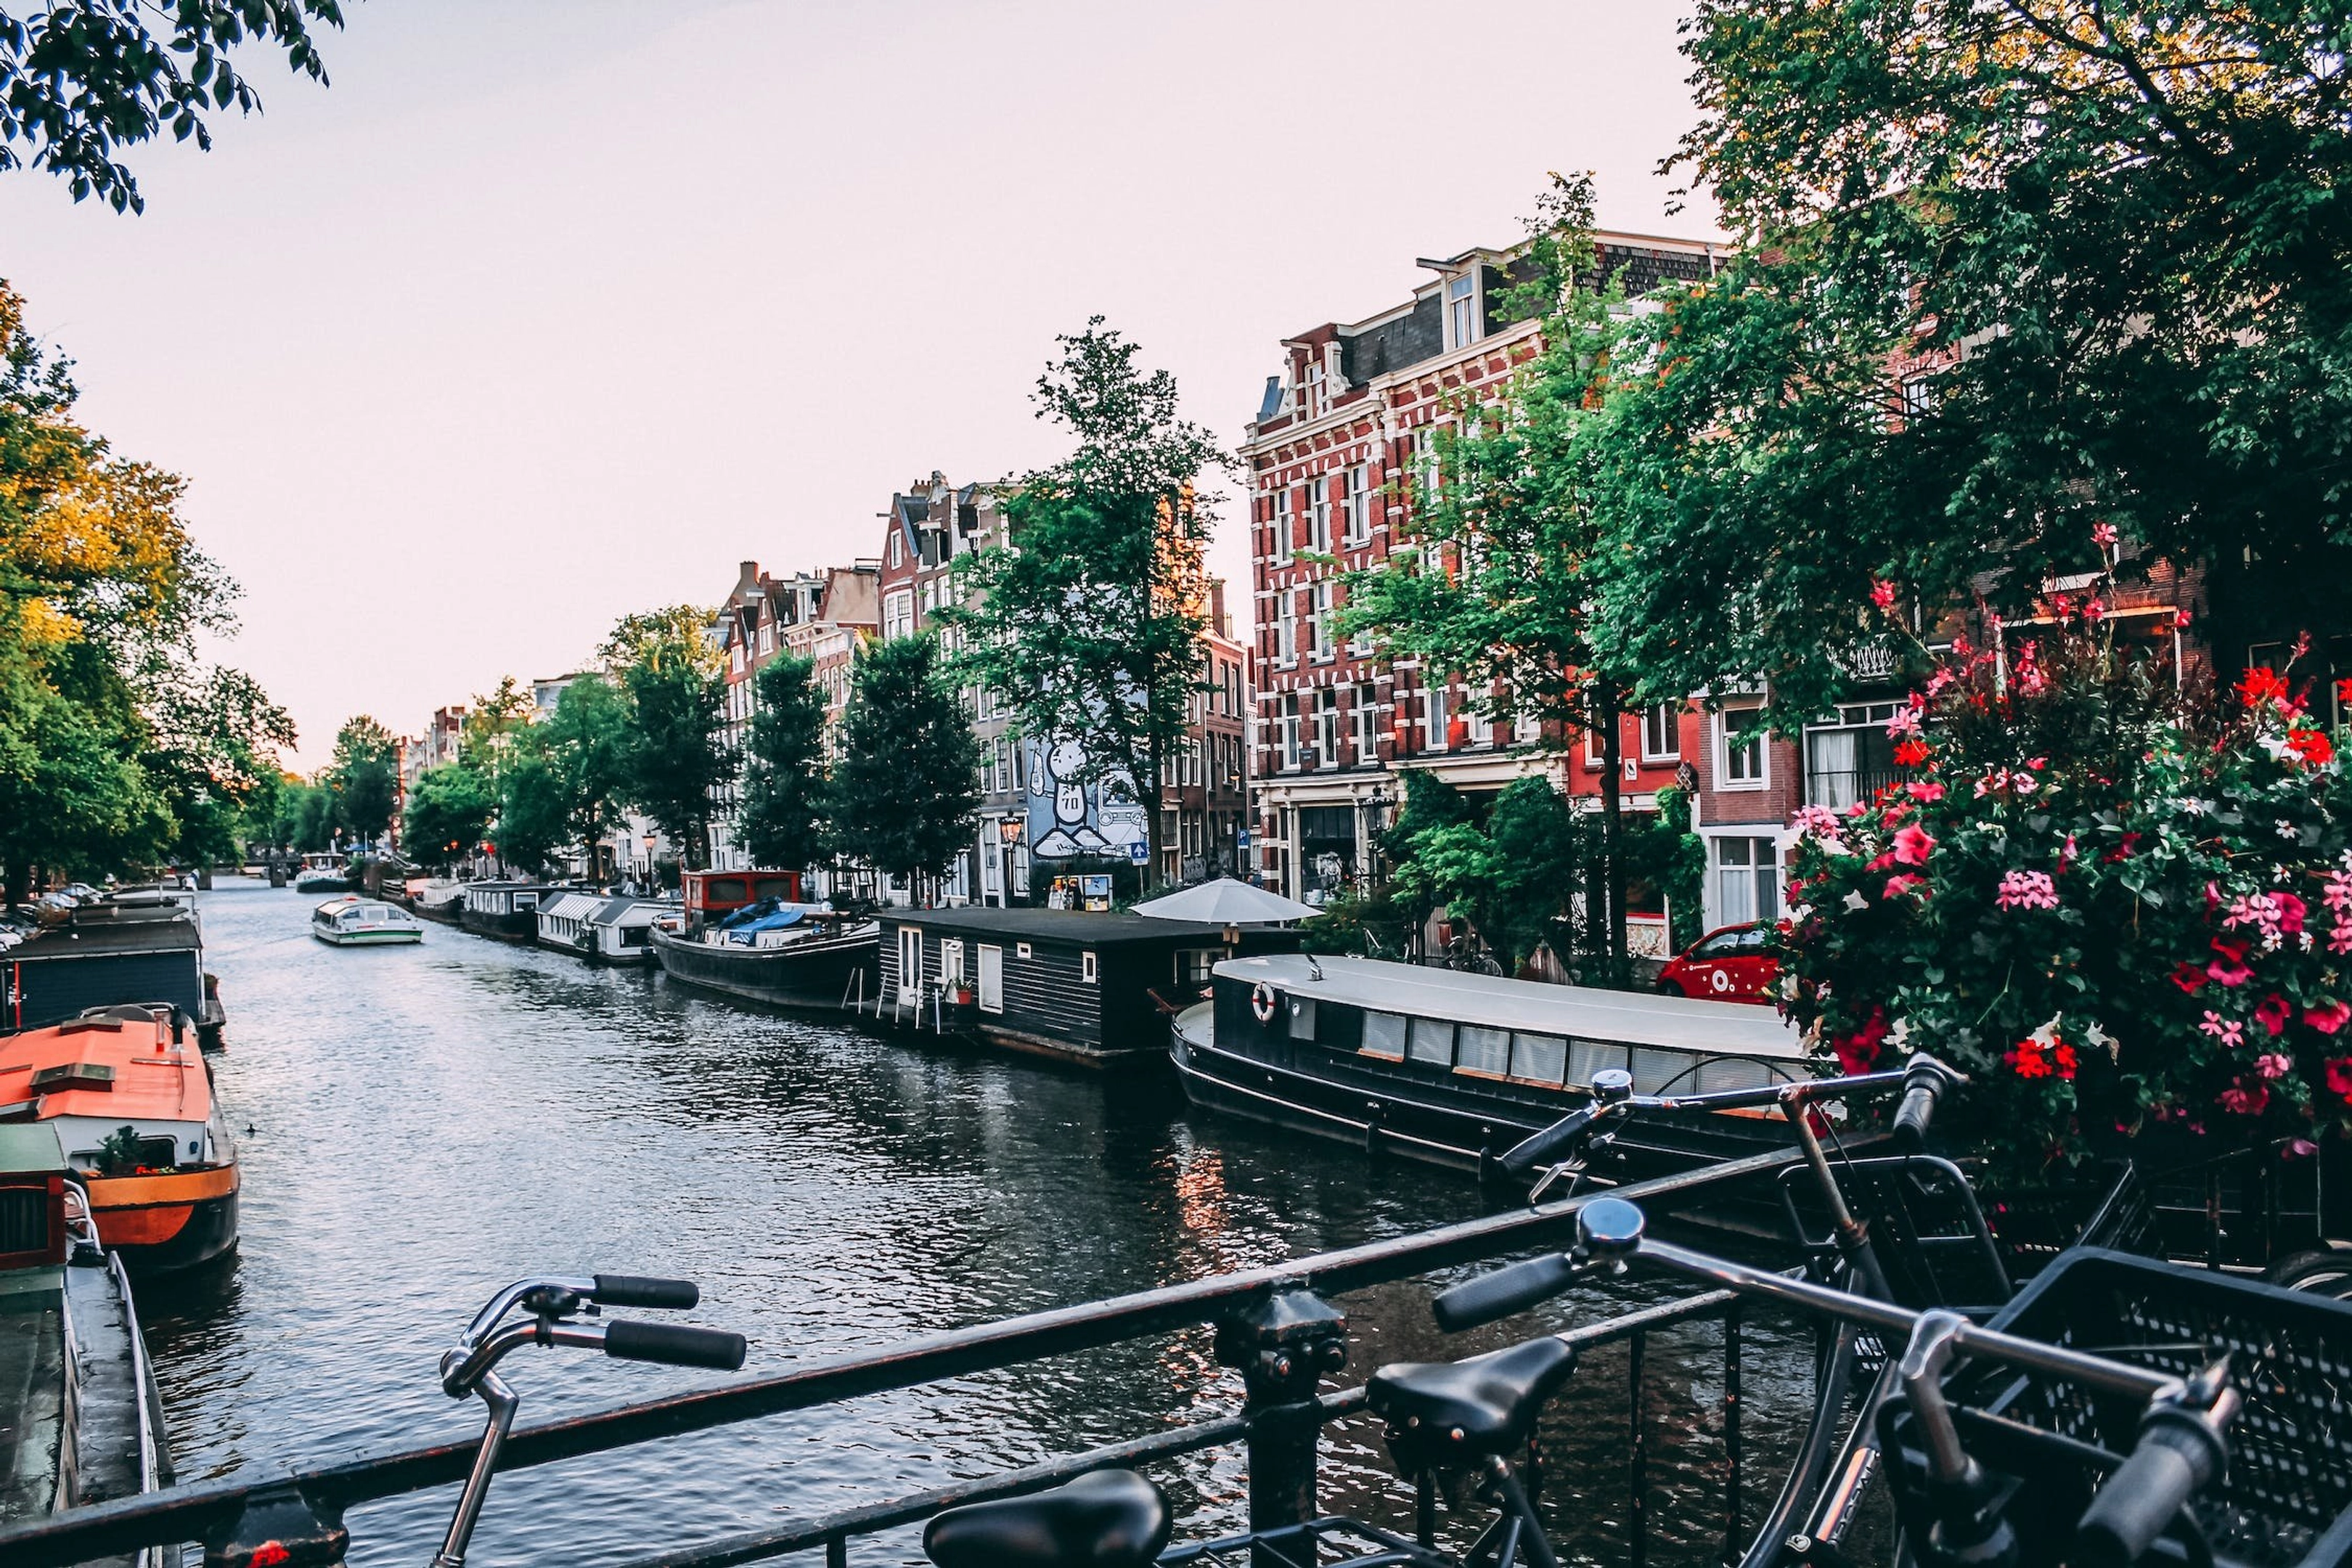 Capture sus recuerdos en Países Bajos